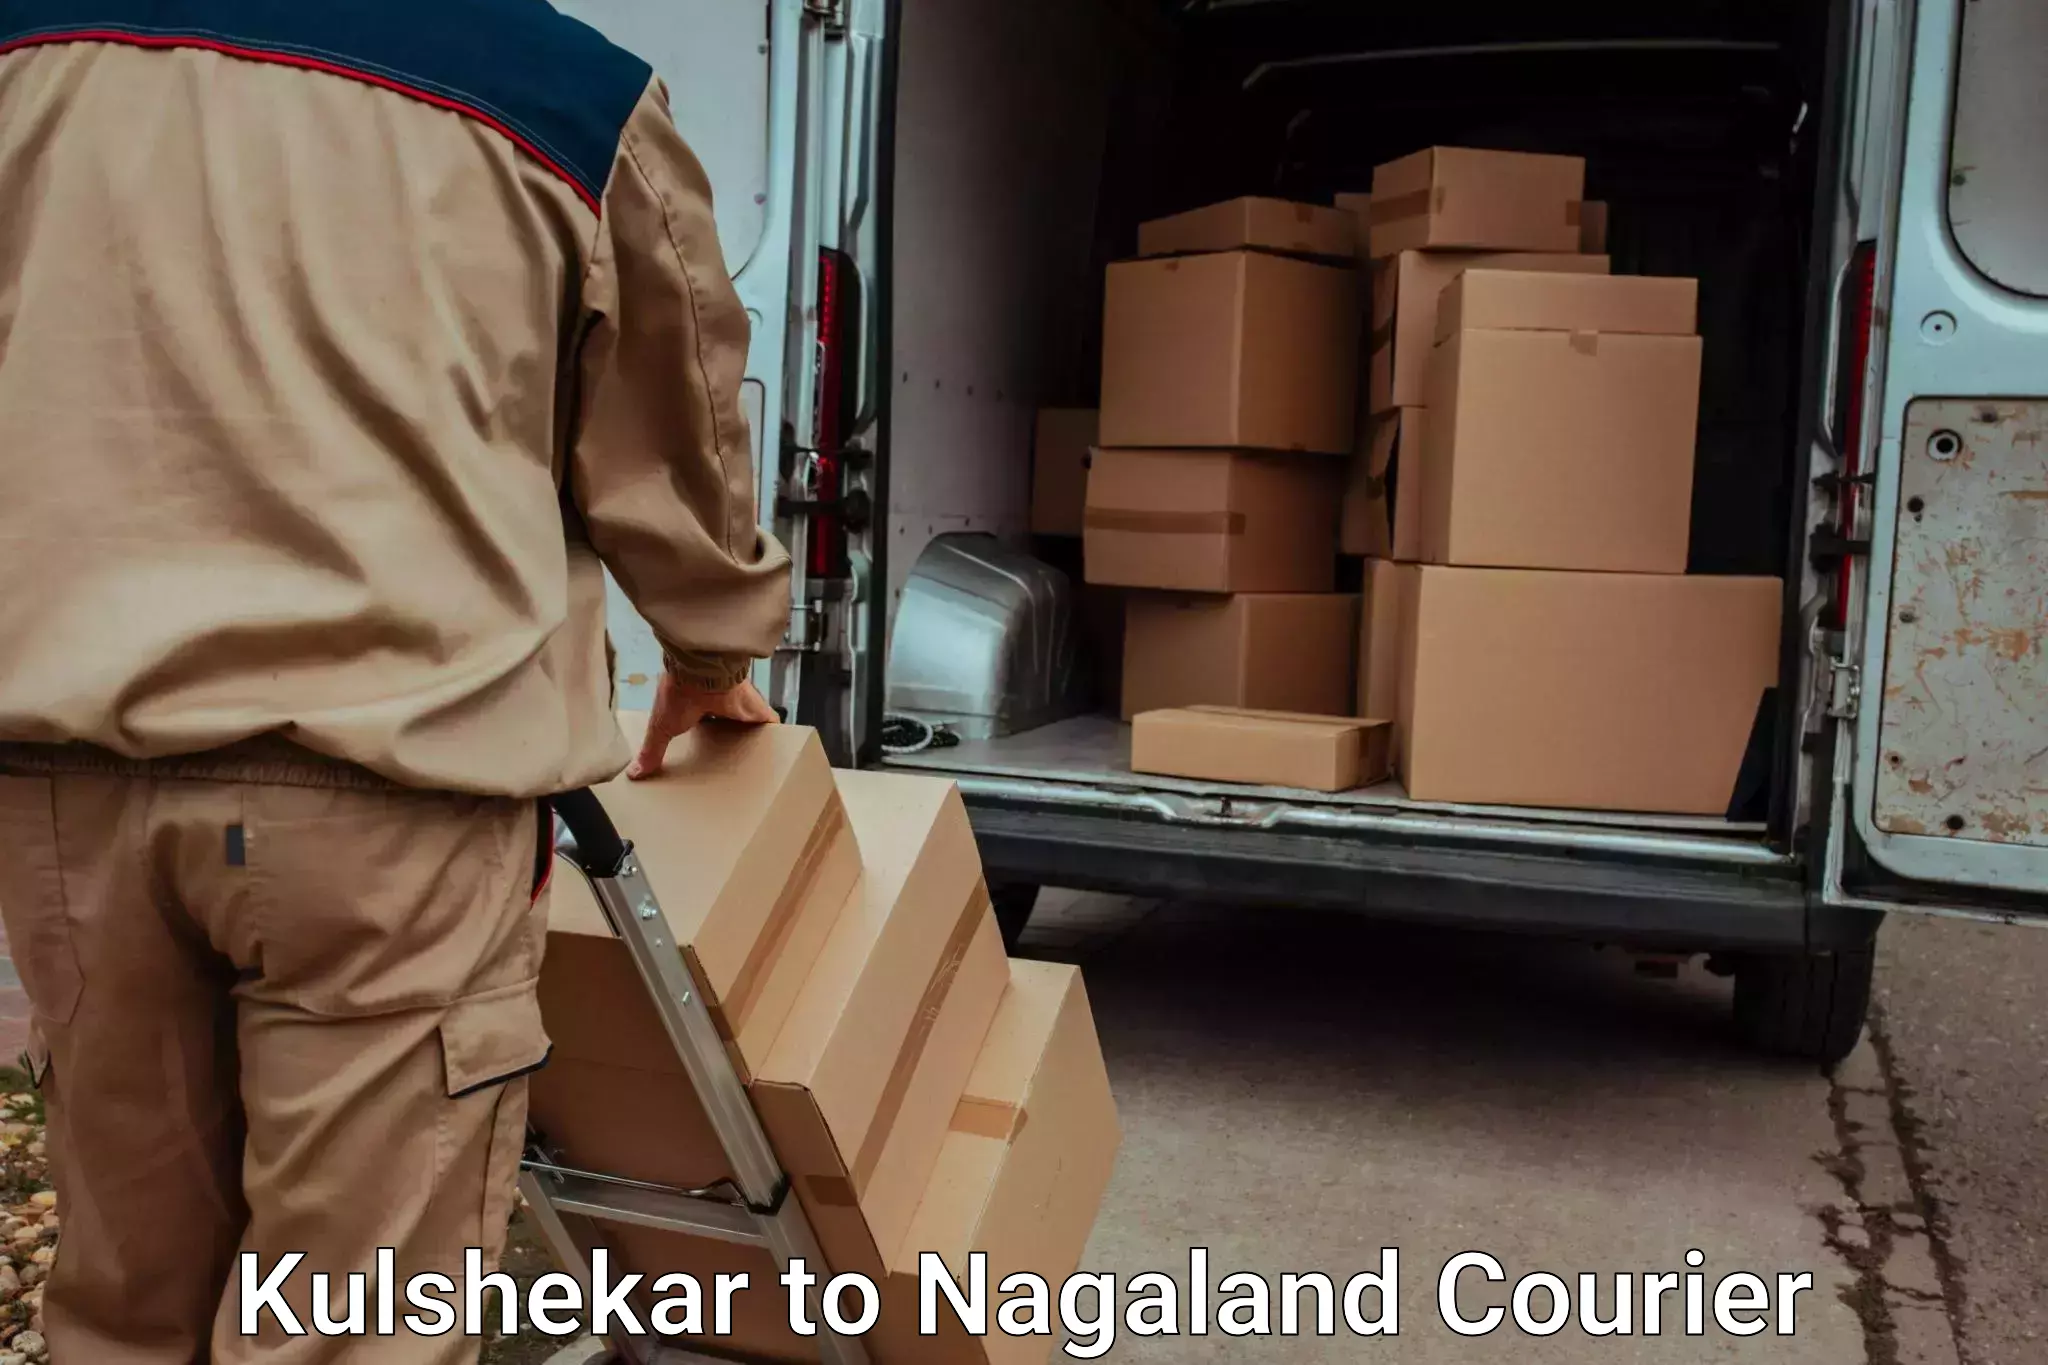 Luggage shipment tracking Kulshekar to Wokha